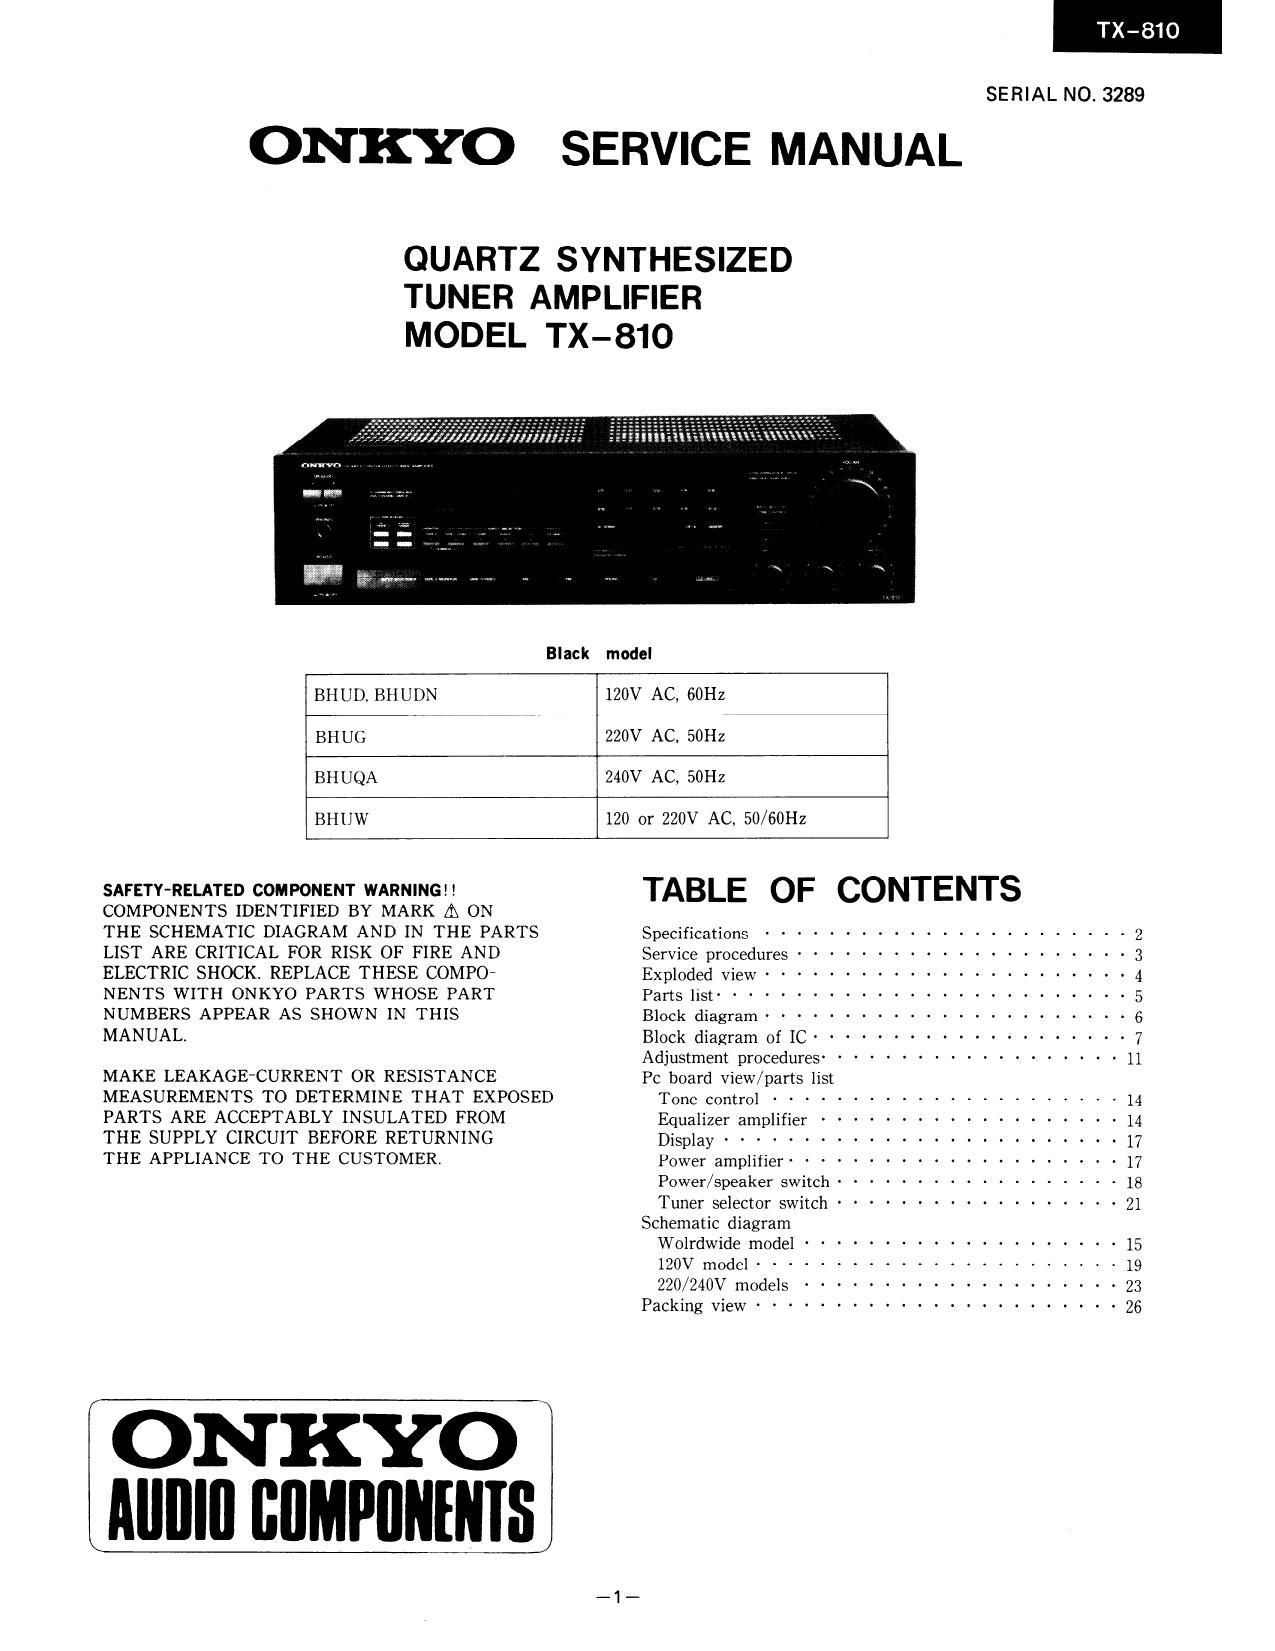 Onkyo TX 810 Service Manual